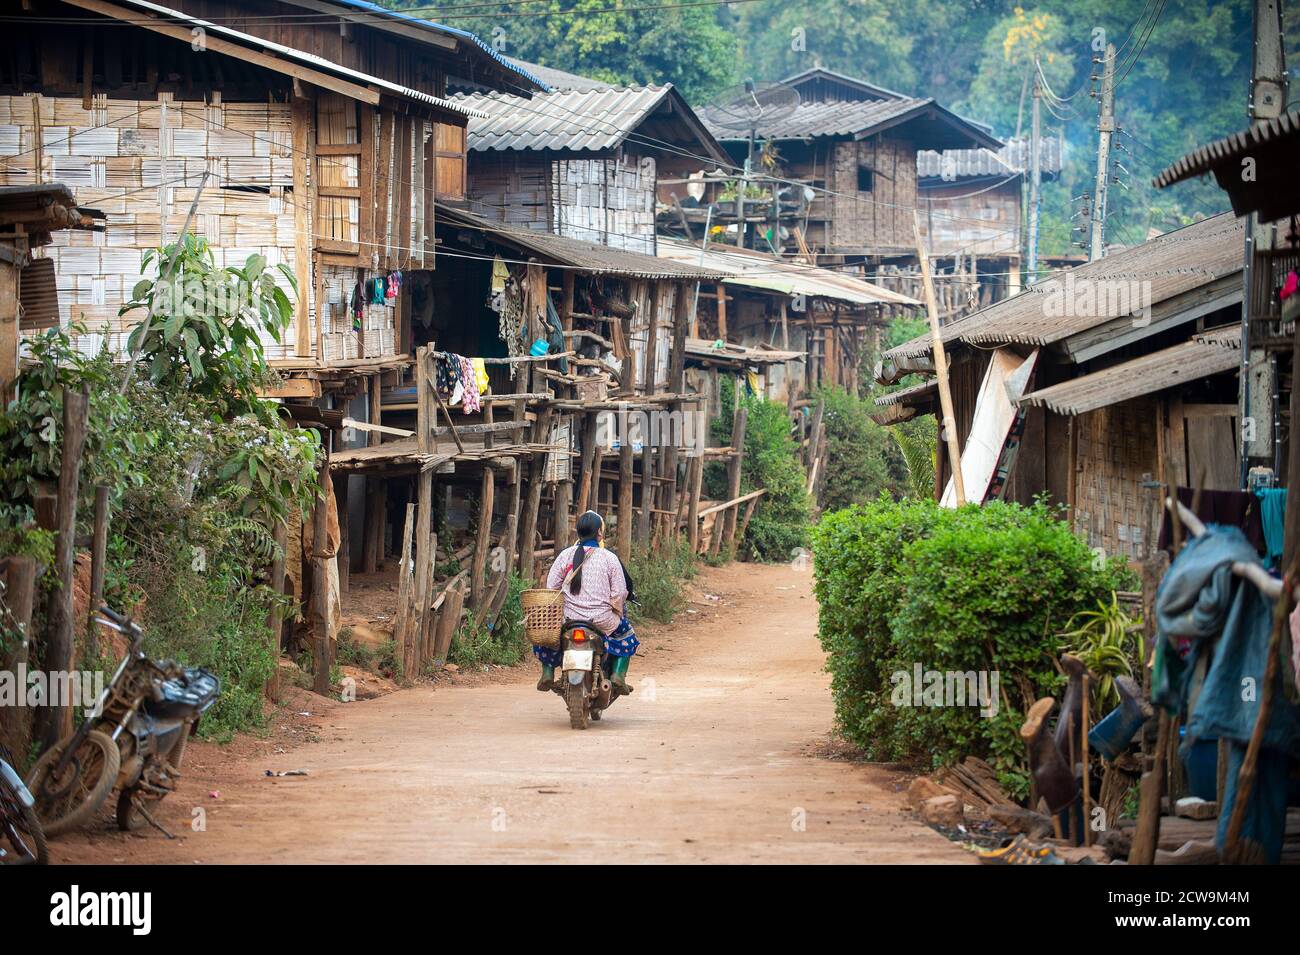 Un petit village rural, un village de tribu de colline à Chiang Mai en Thaïlande, des maisons en bois et en bambou, et une route de terre avec une moto. Banque D'Images